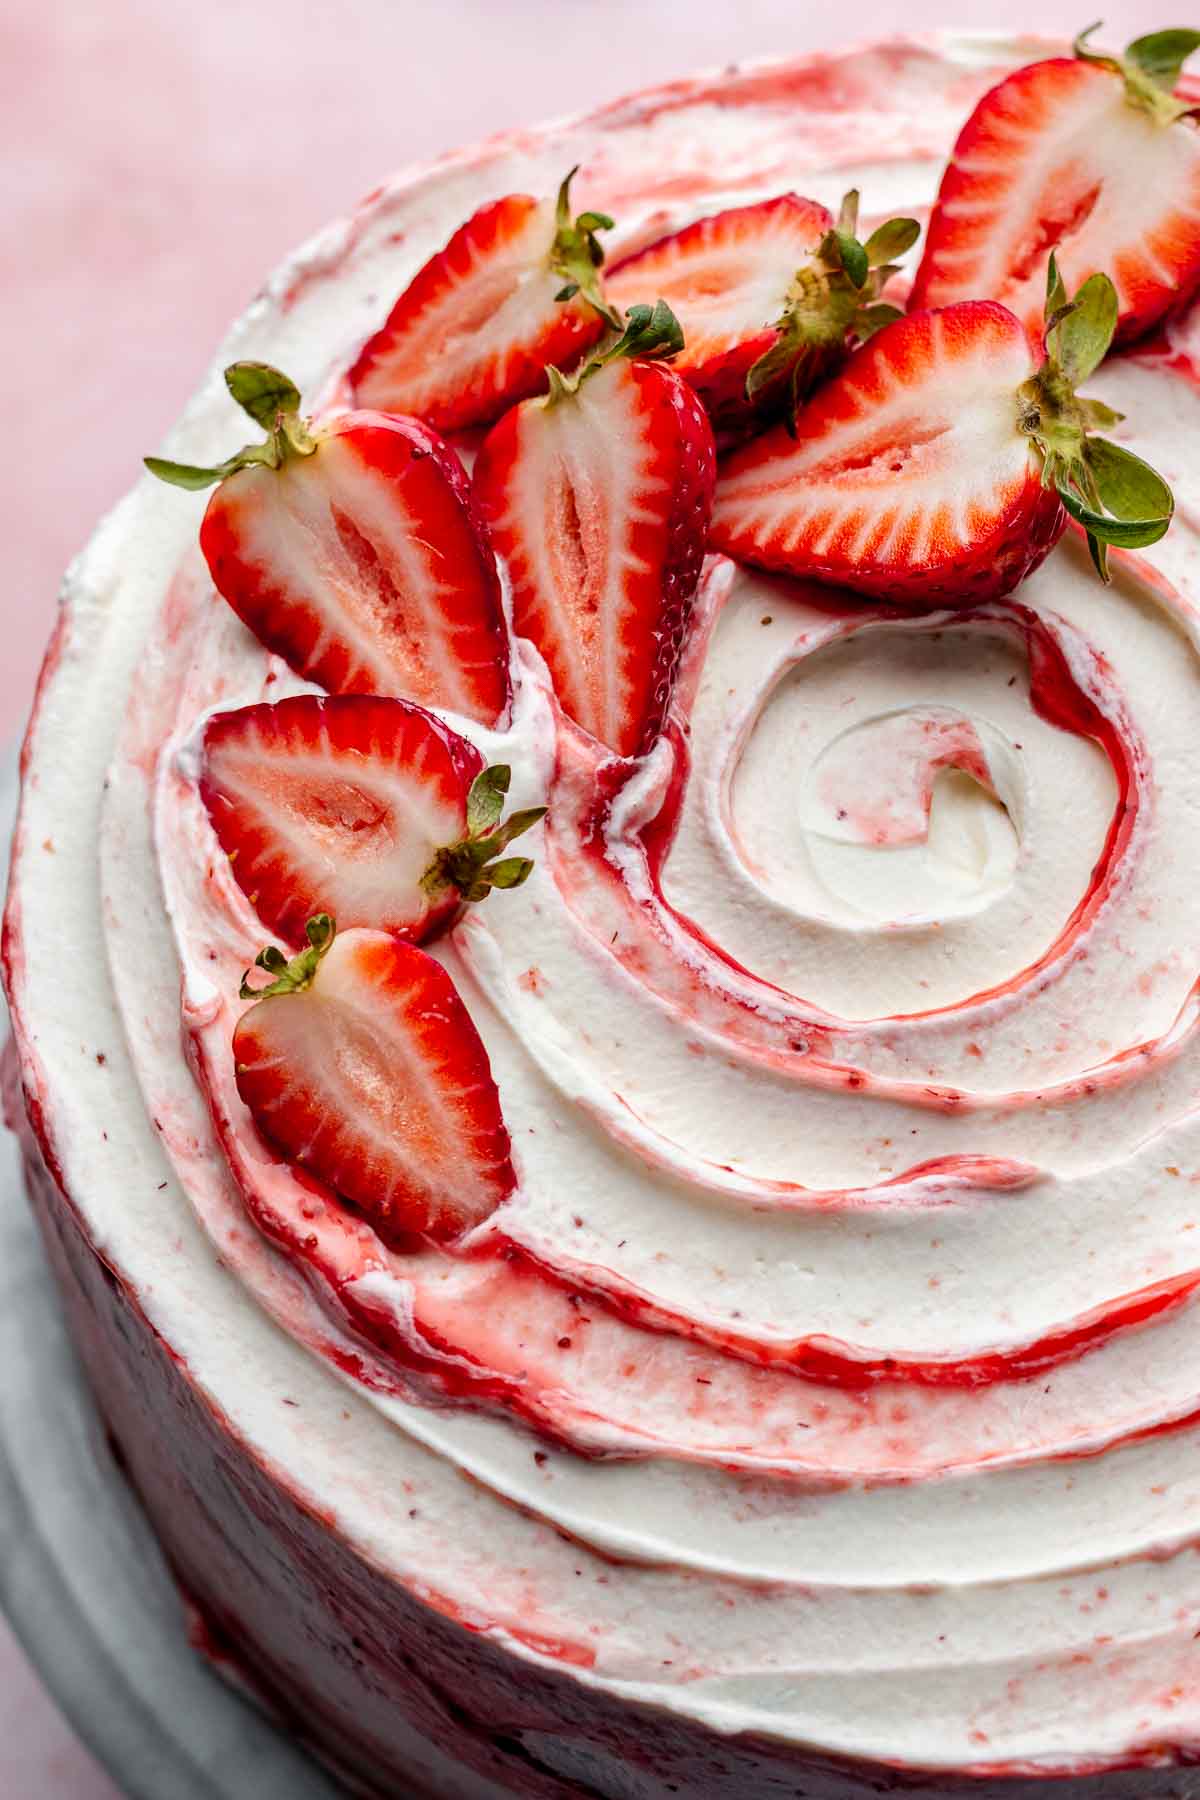 Decorated strawberry shortcake cake.